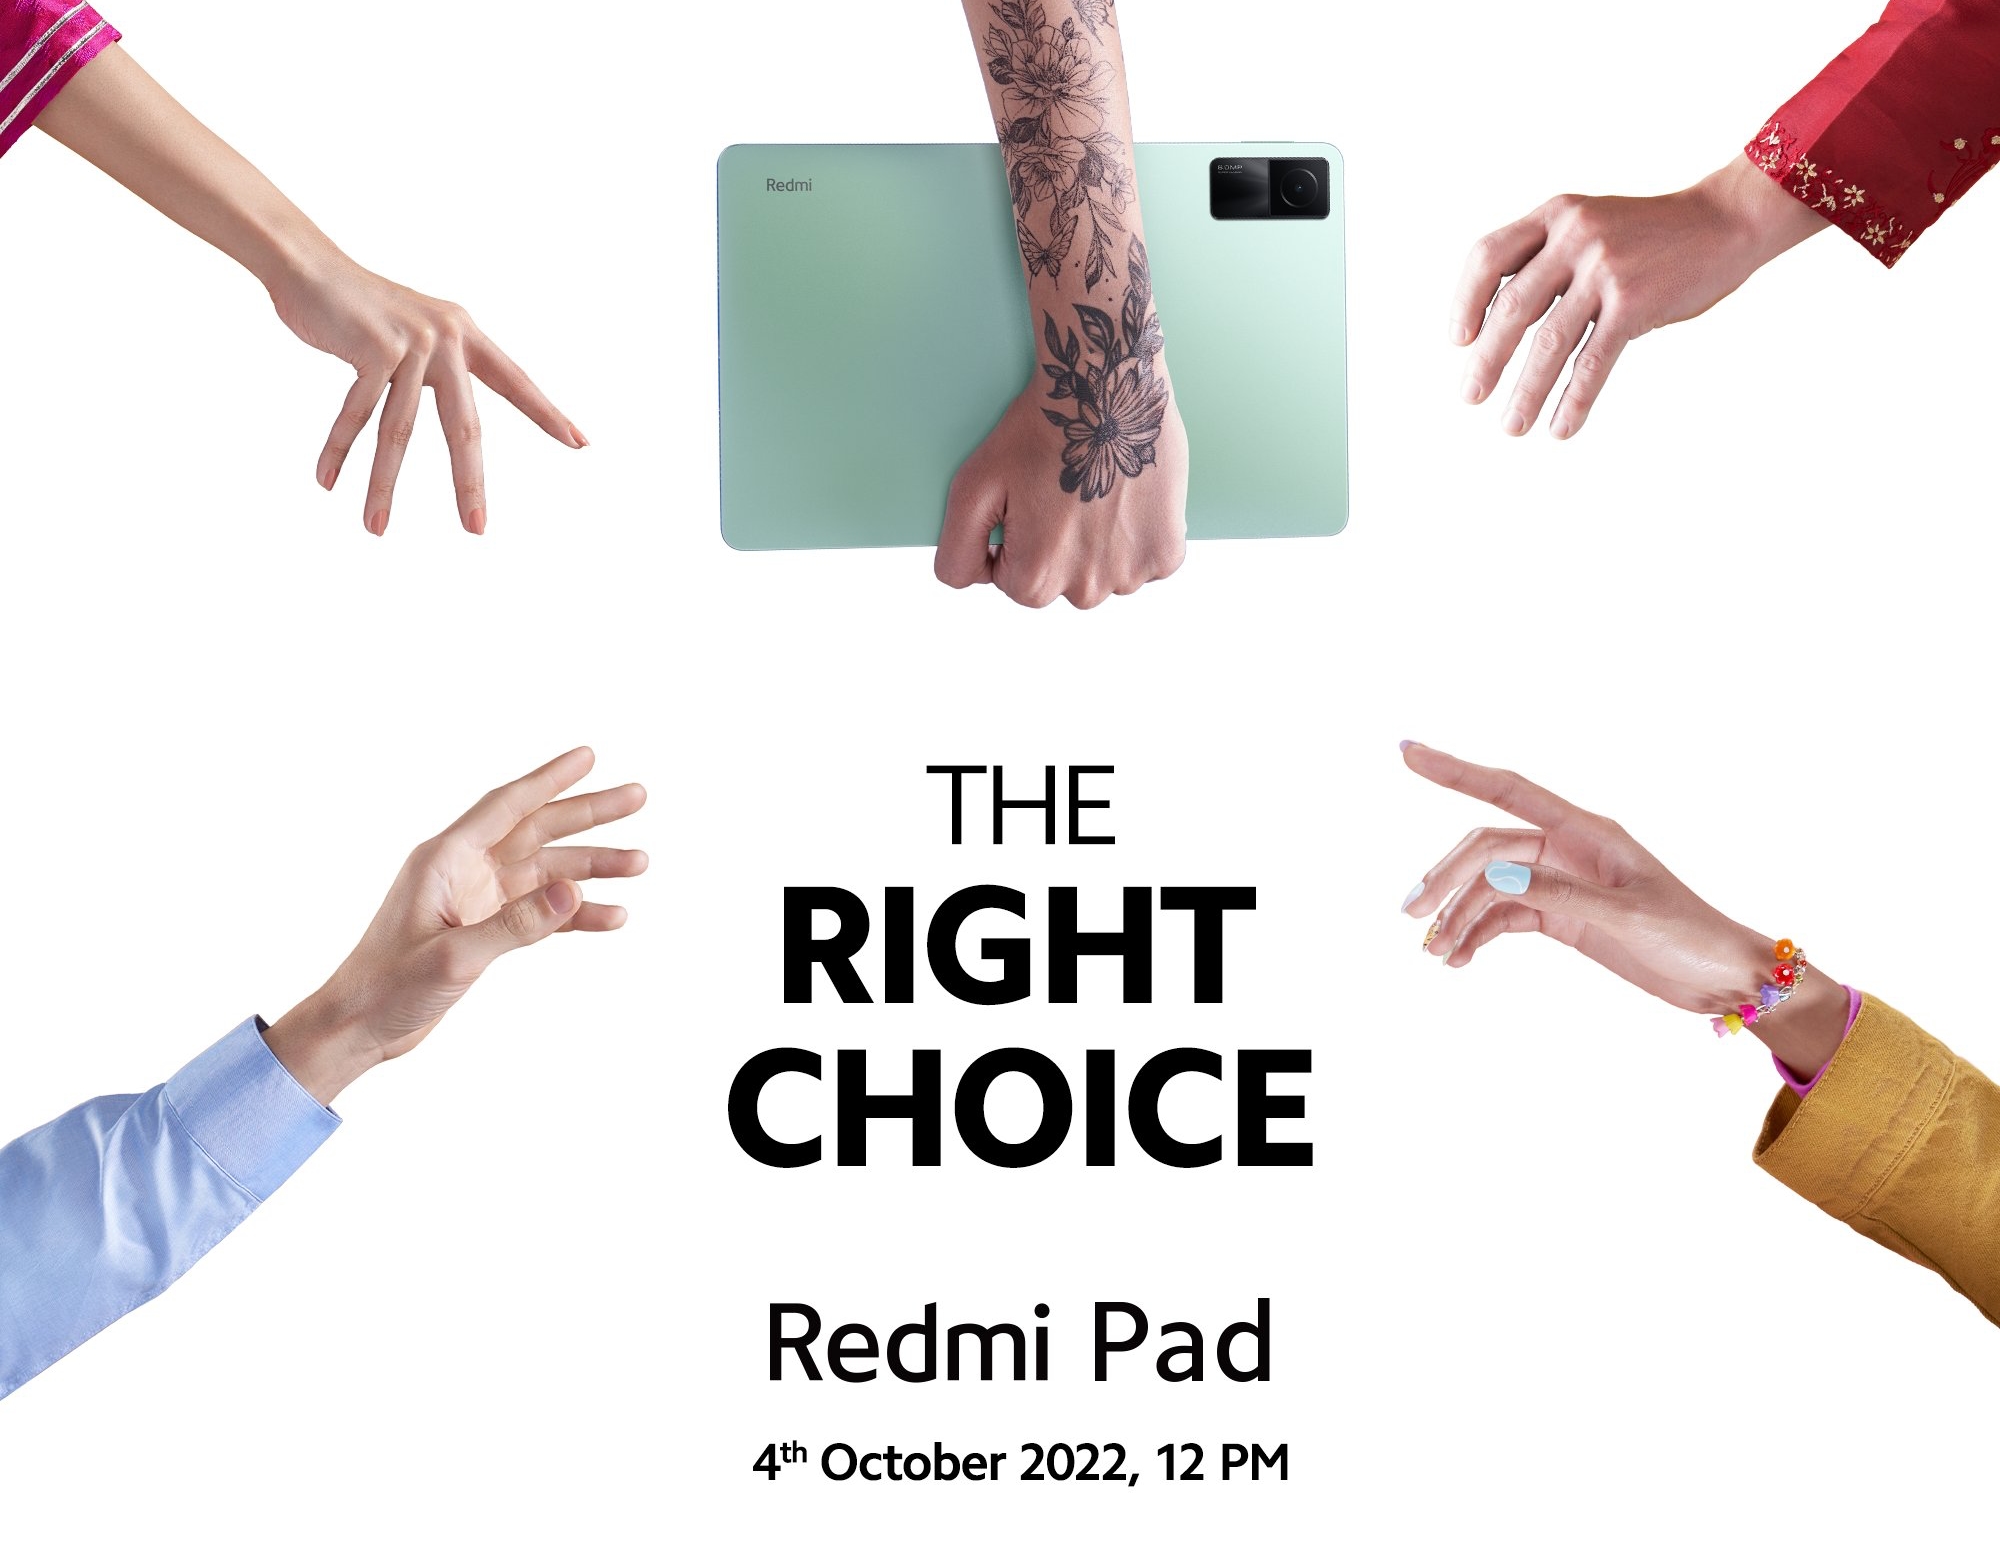 Confermato: Redmi Pad con chip MediaTek, display da 11 pollici e batteria da 8000 mAh sarà presentato il 4 ottobre